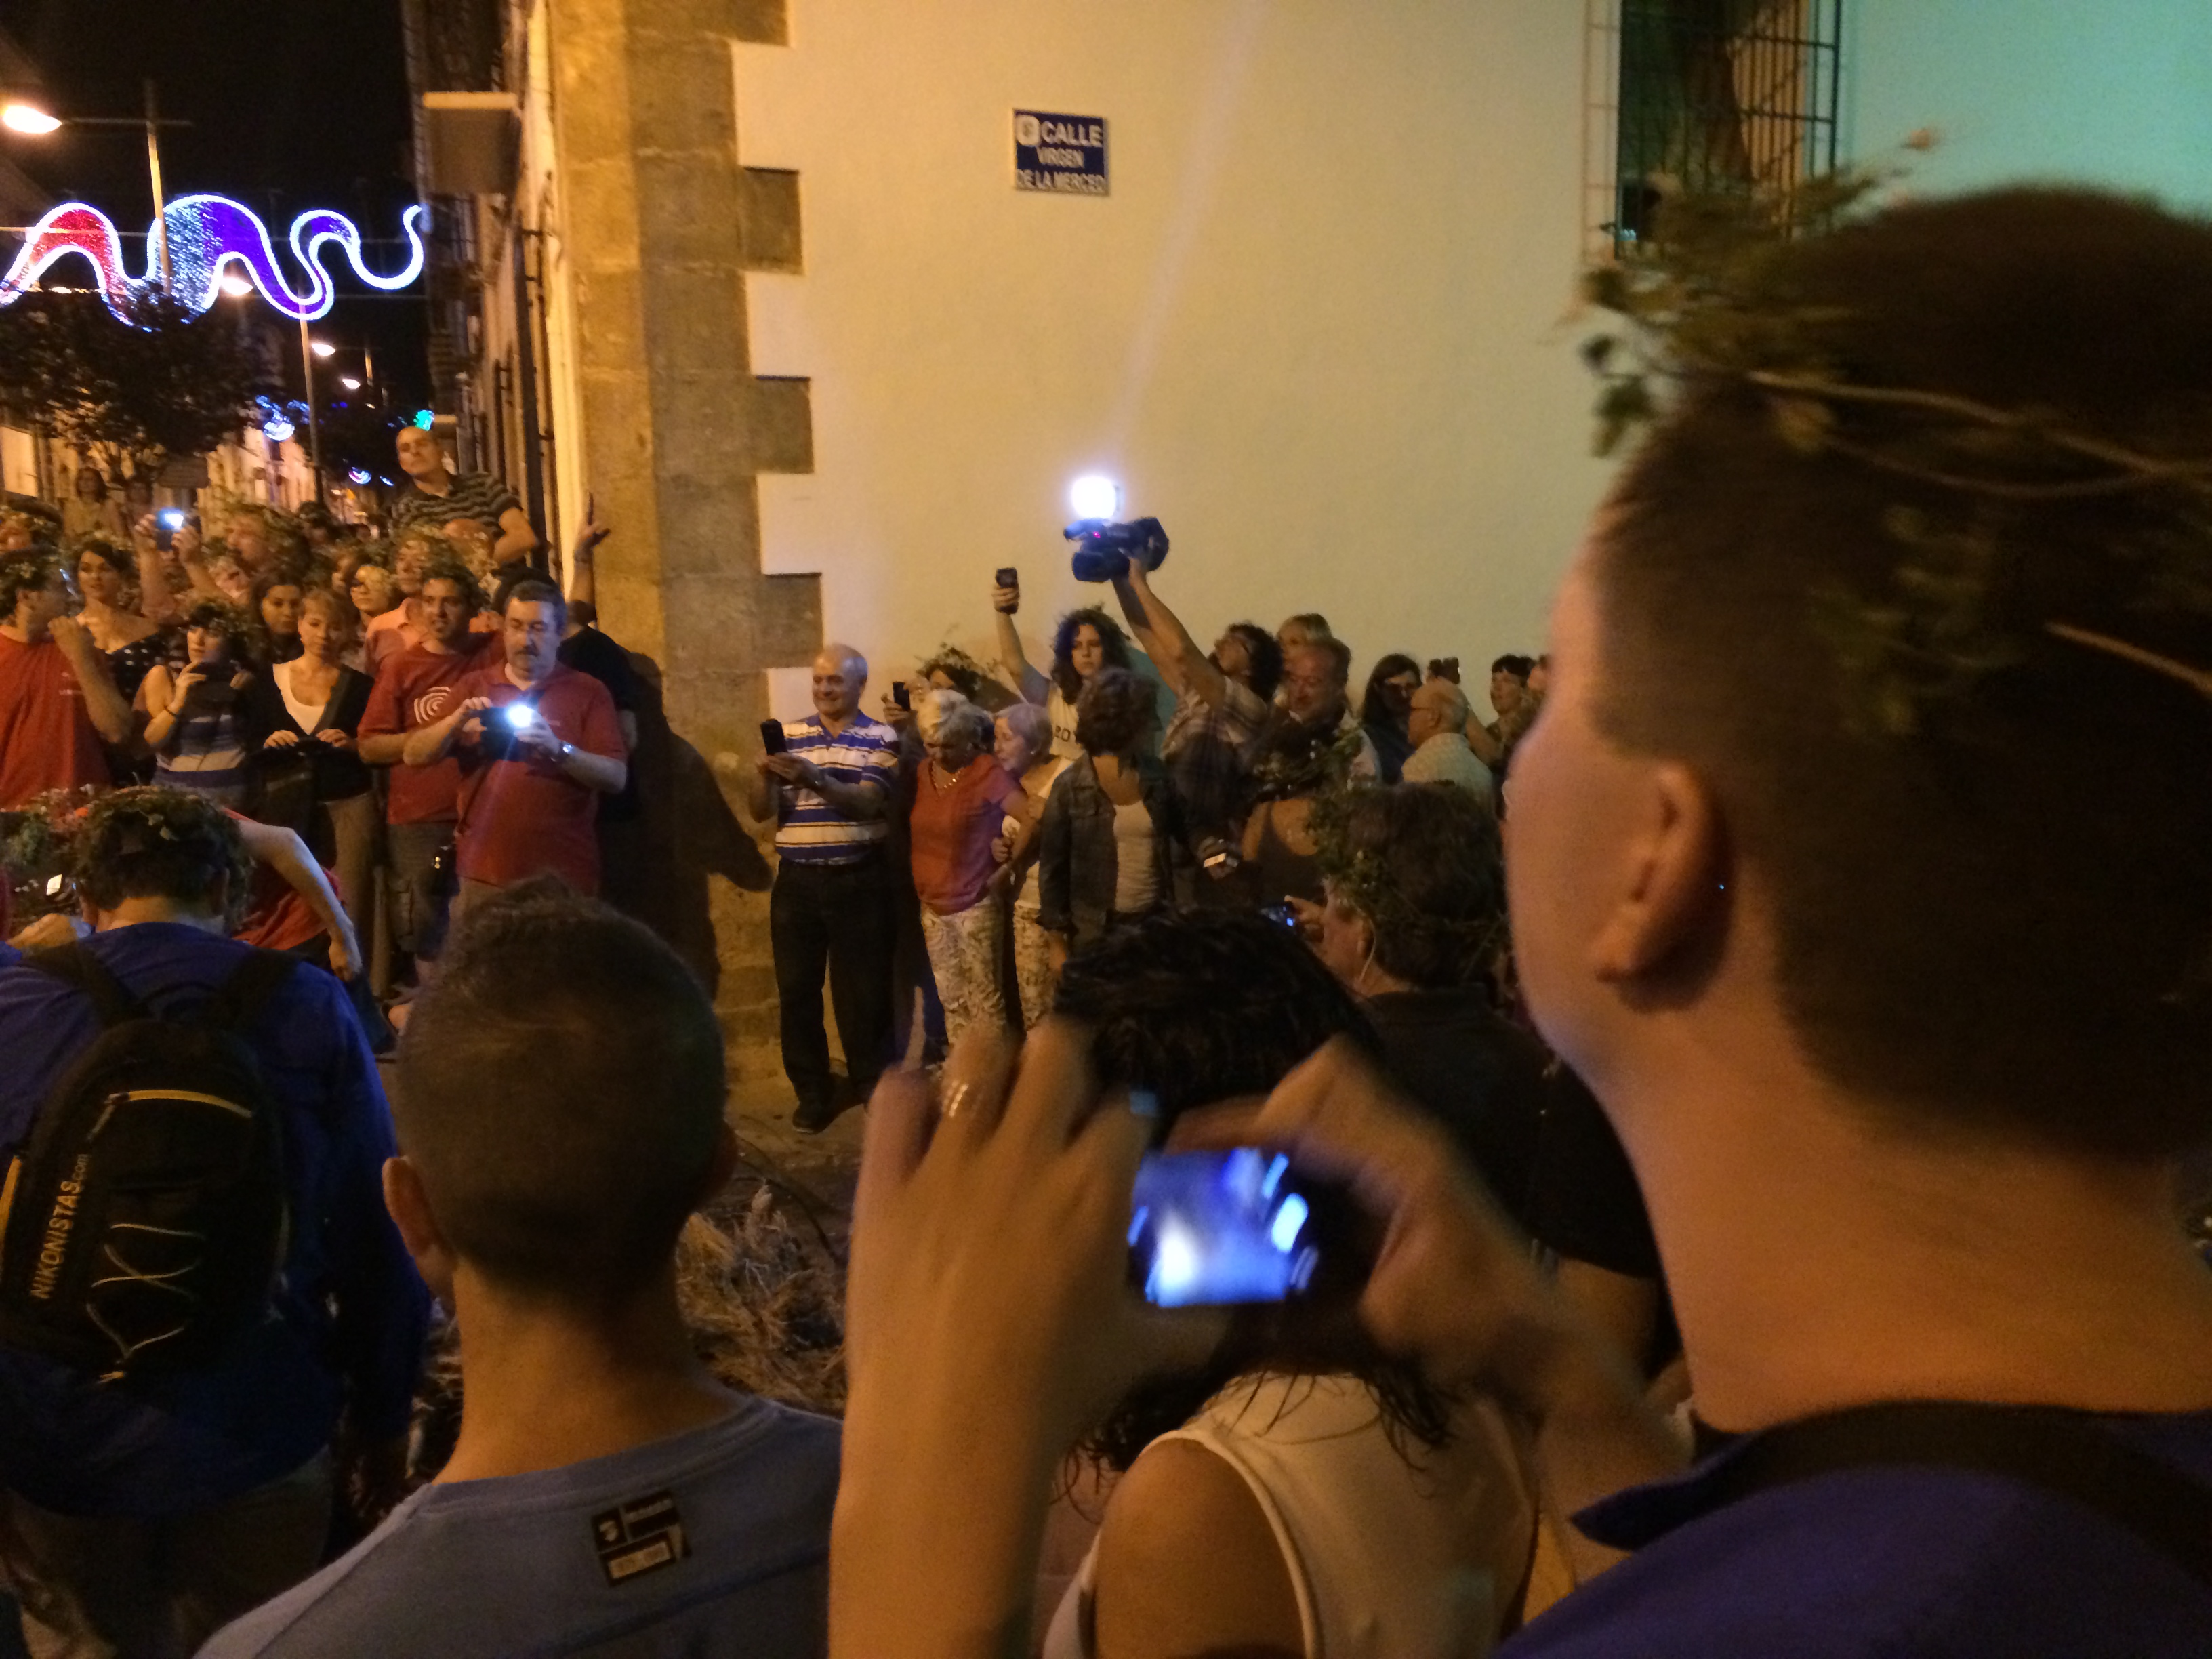 Las fiestas de Xàbia/Jávea en #xabia365